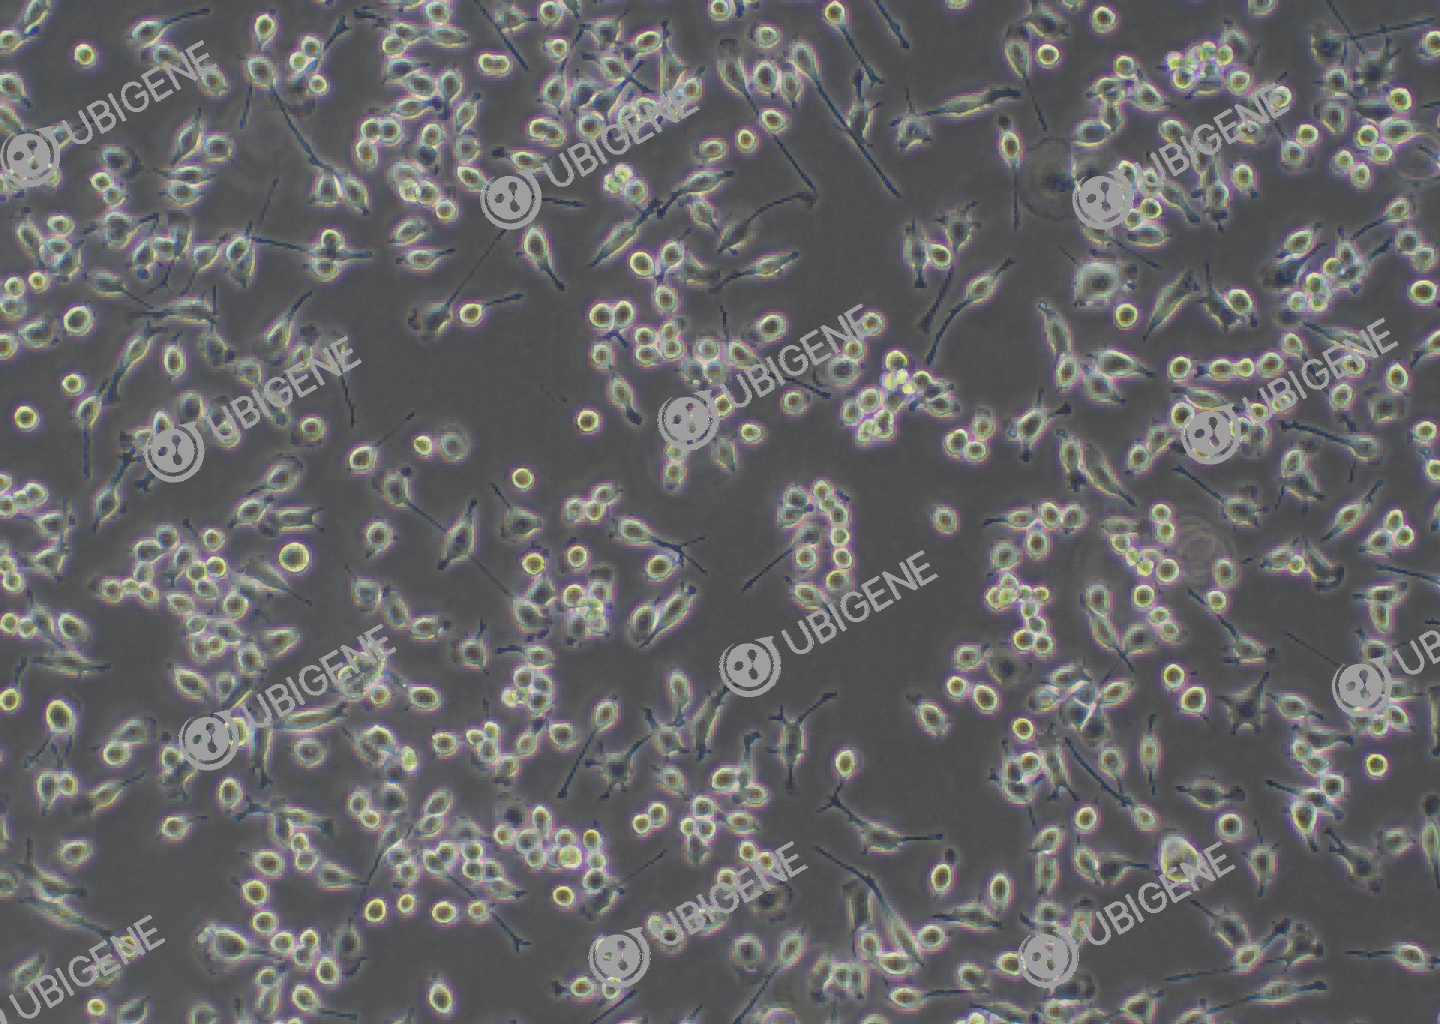 小鼠小胶质细胞(BV2)细胞形态培养图